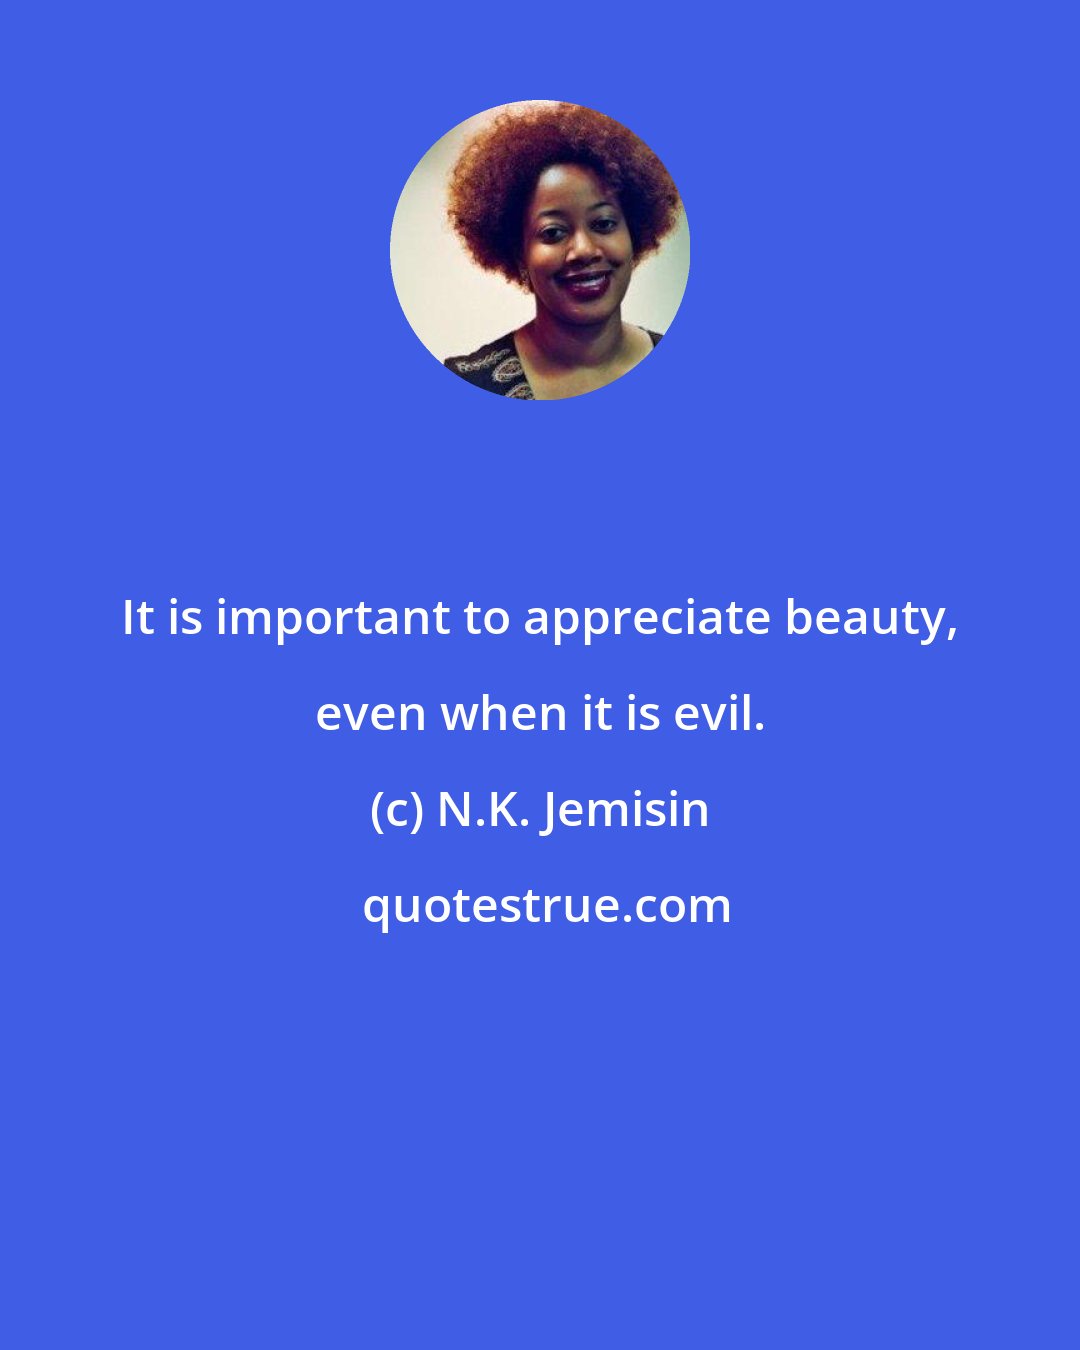 N.K. Jemisin: It is important to appreciate beauty, even when it is evil.